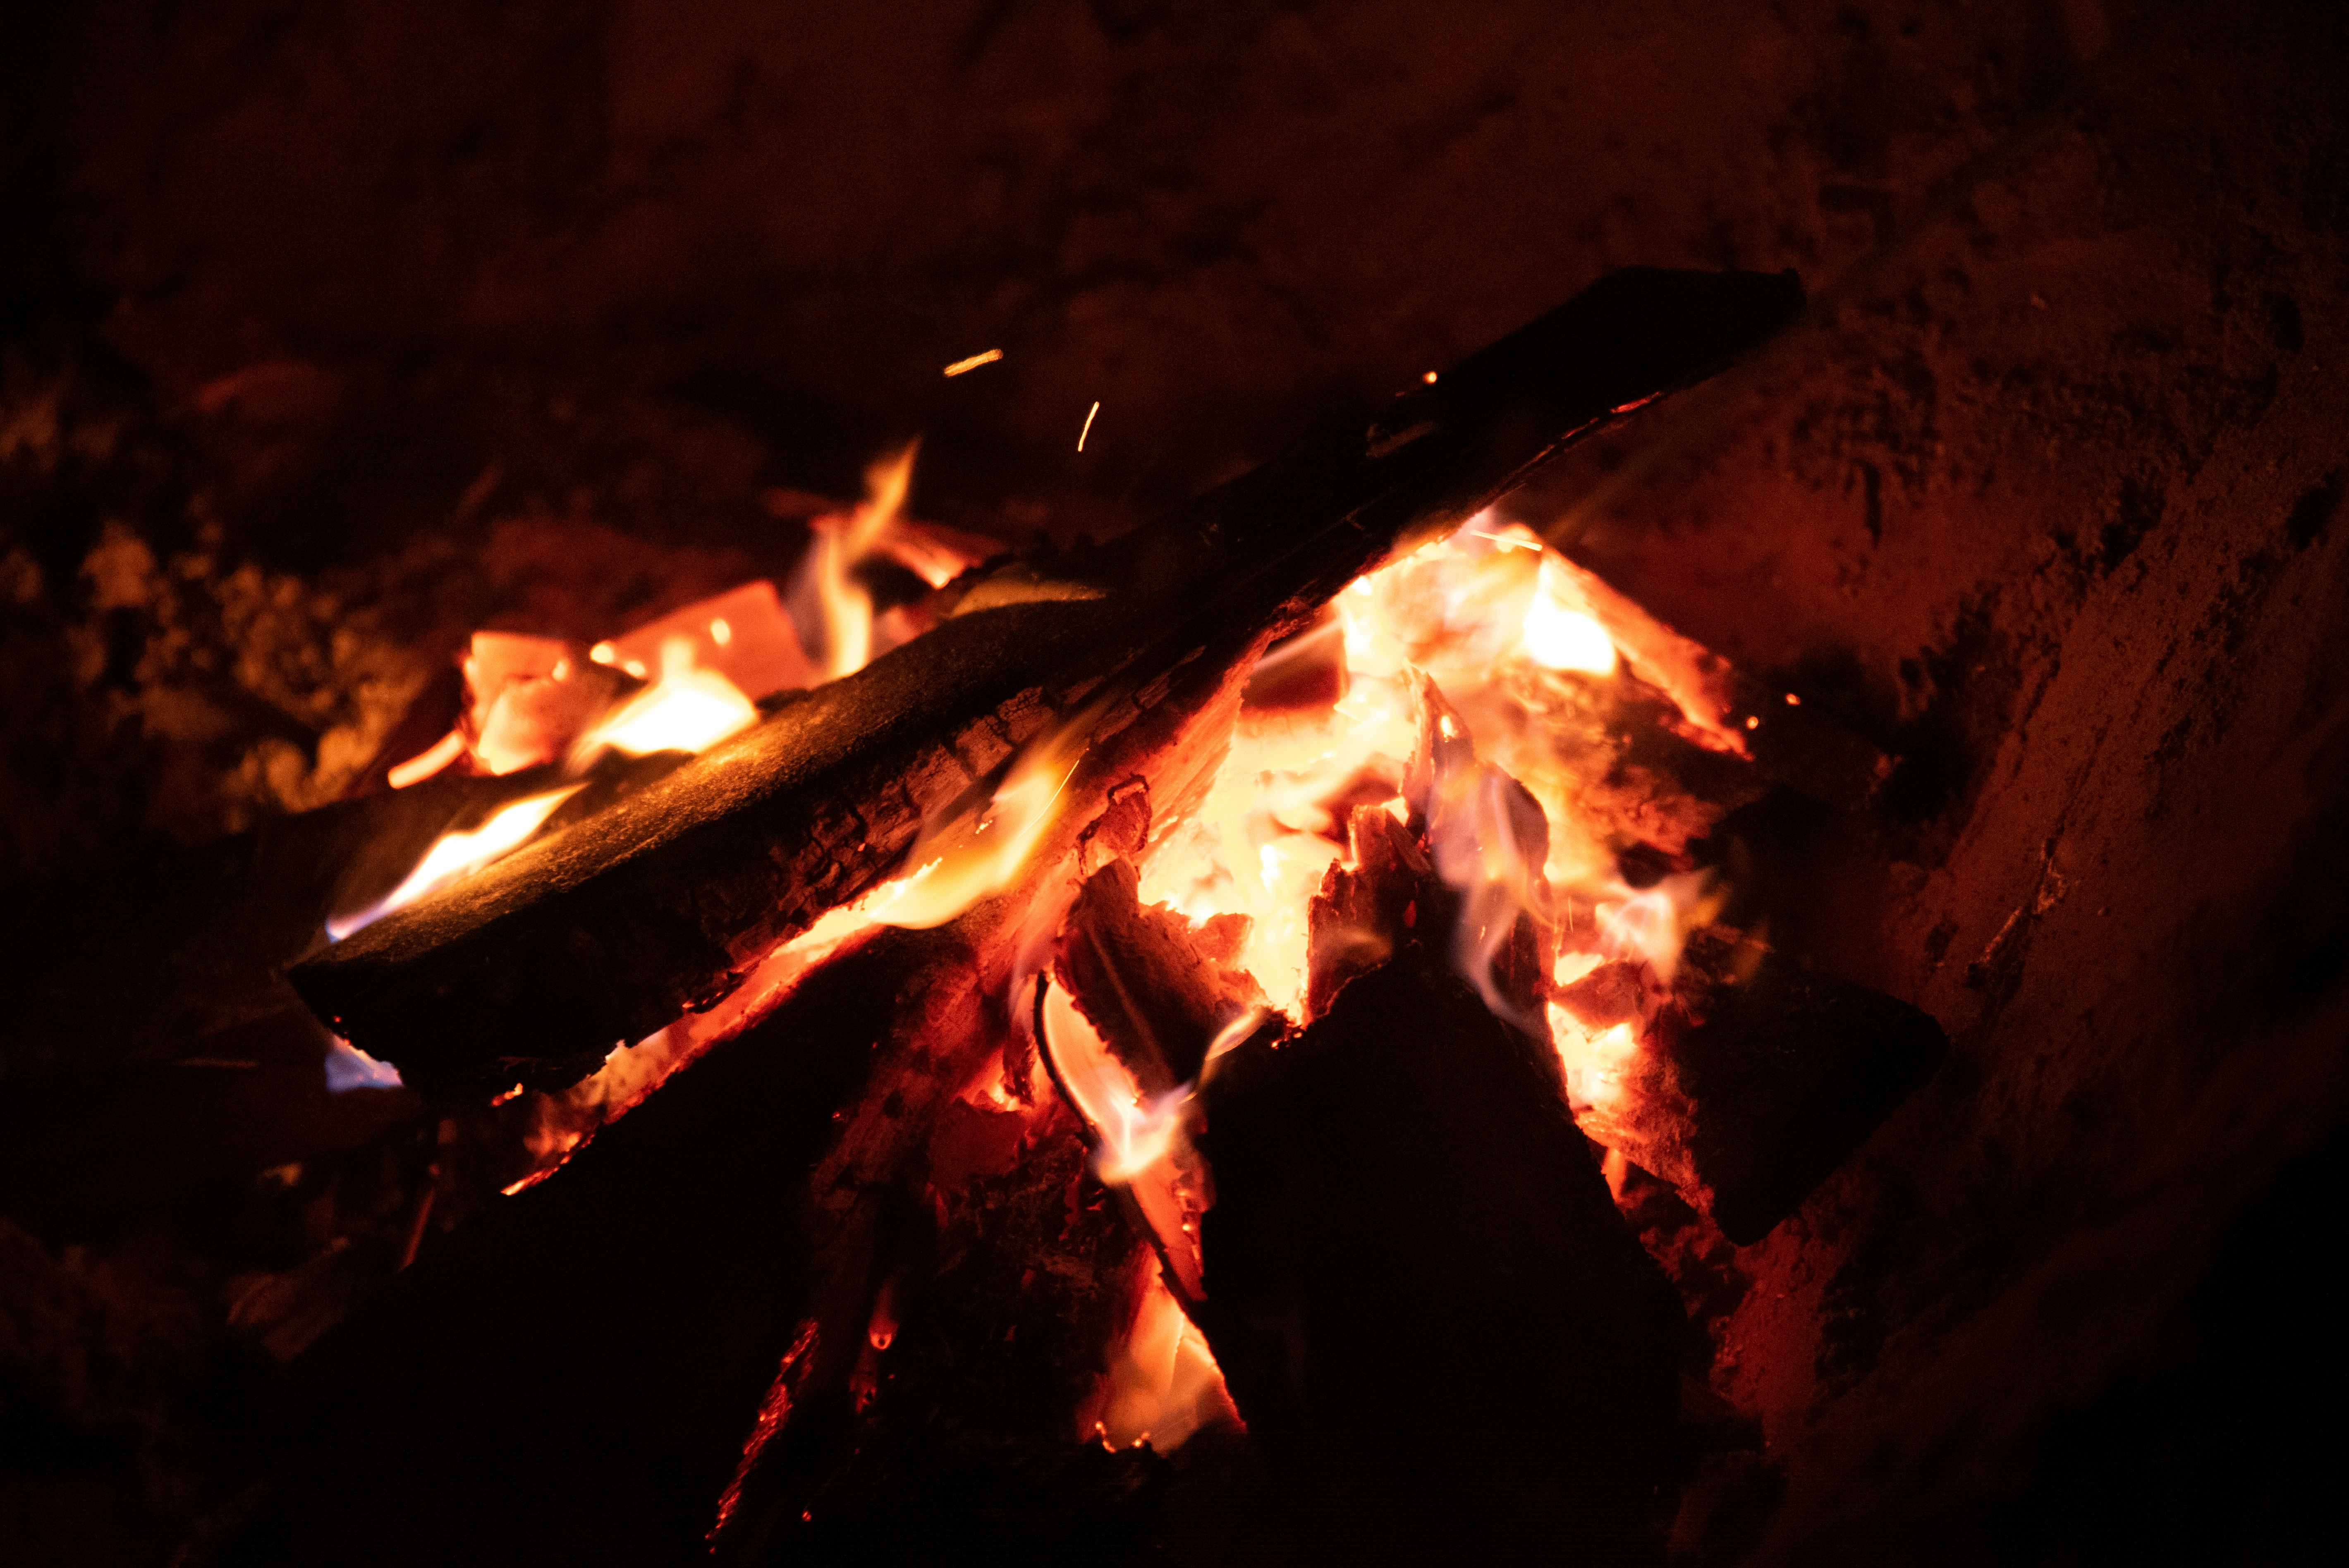 burning wood during night time